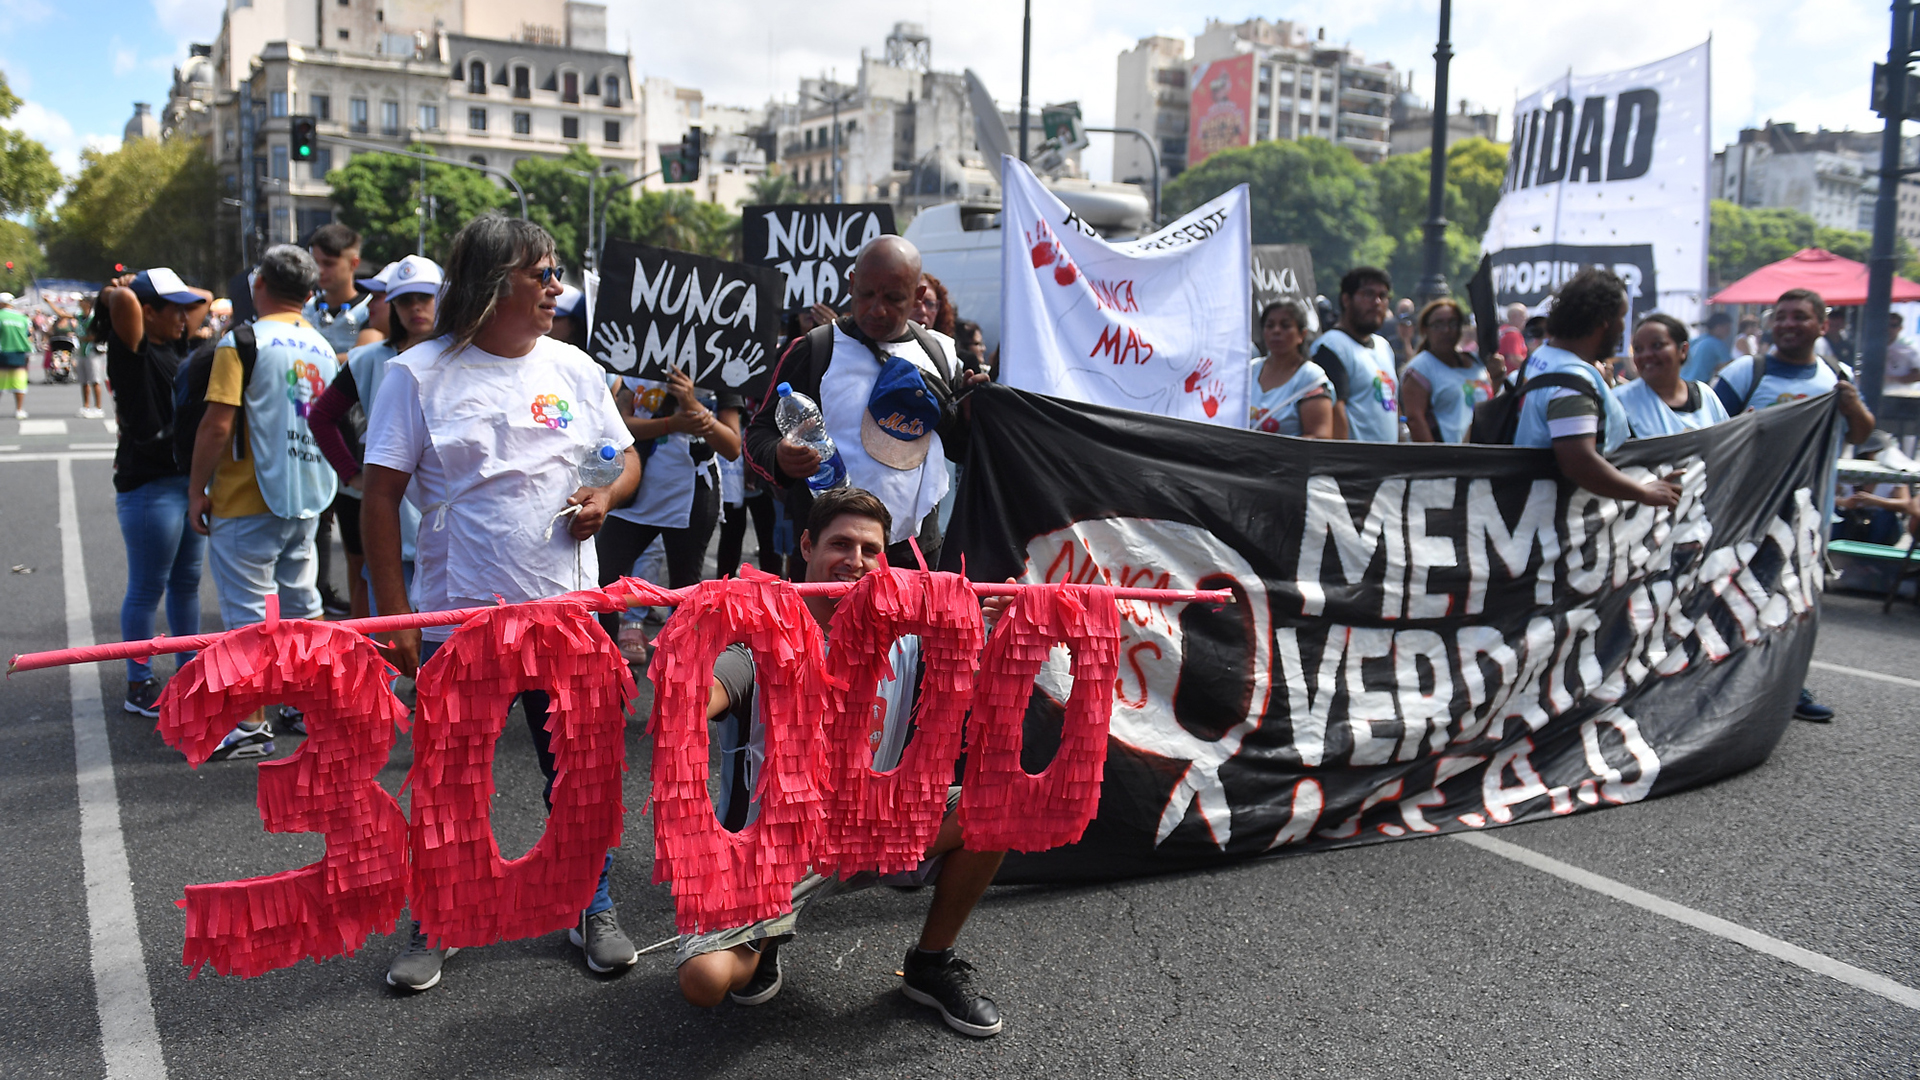 Miles de personas se movilizan marchan bajo la consigna “Memoria, Verdad y Justicia”.